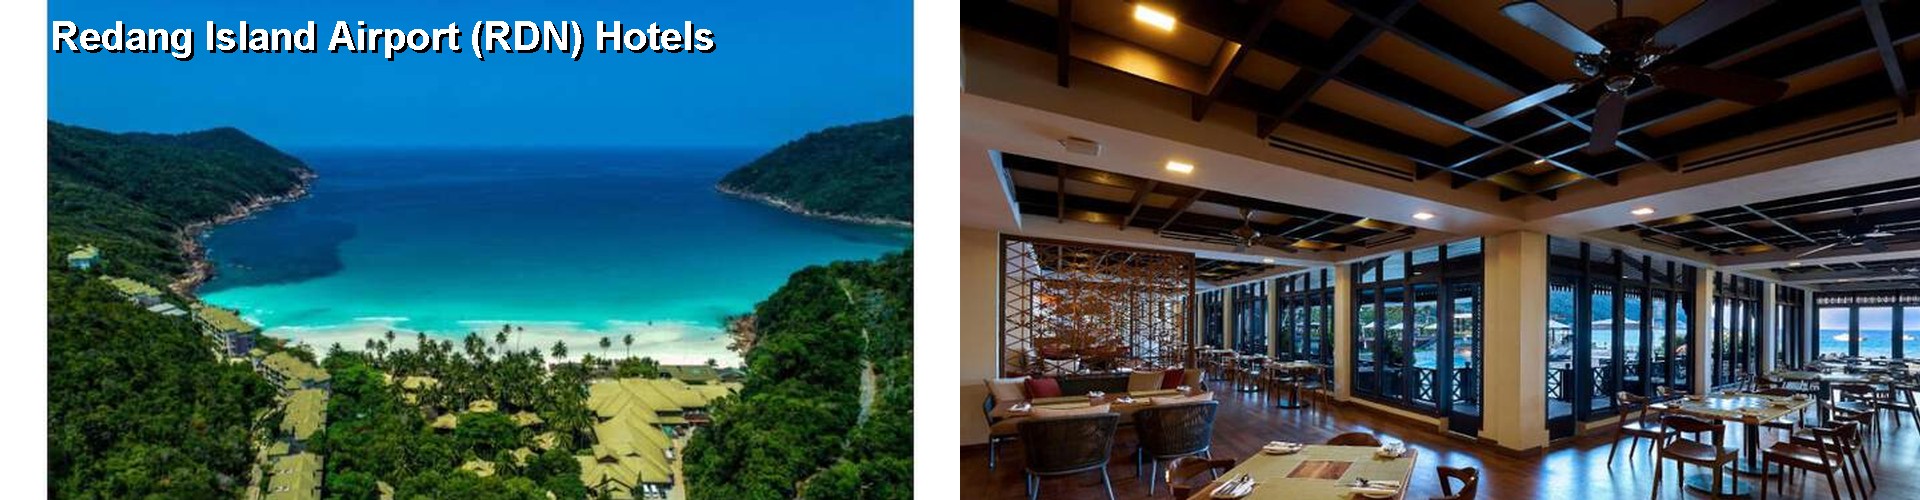 2 Best Hotels near Redang Island Airport (RDN)